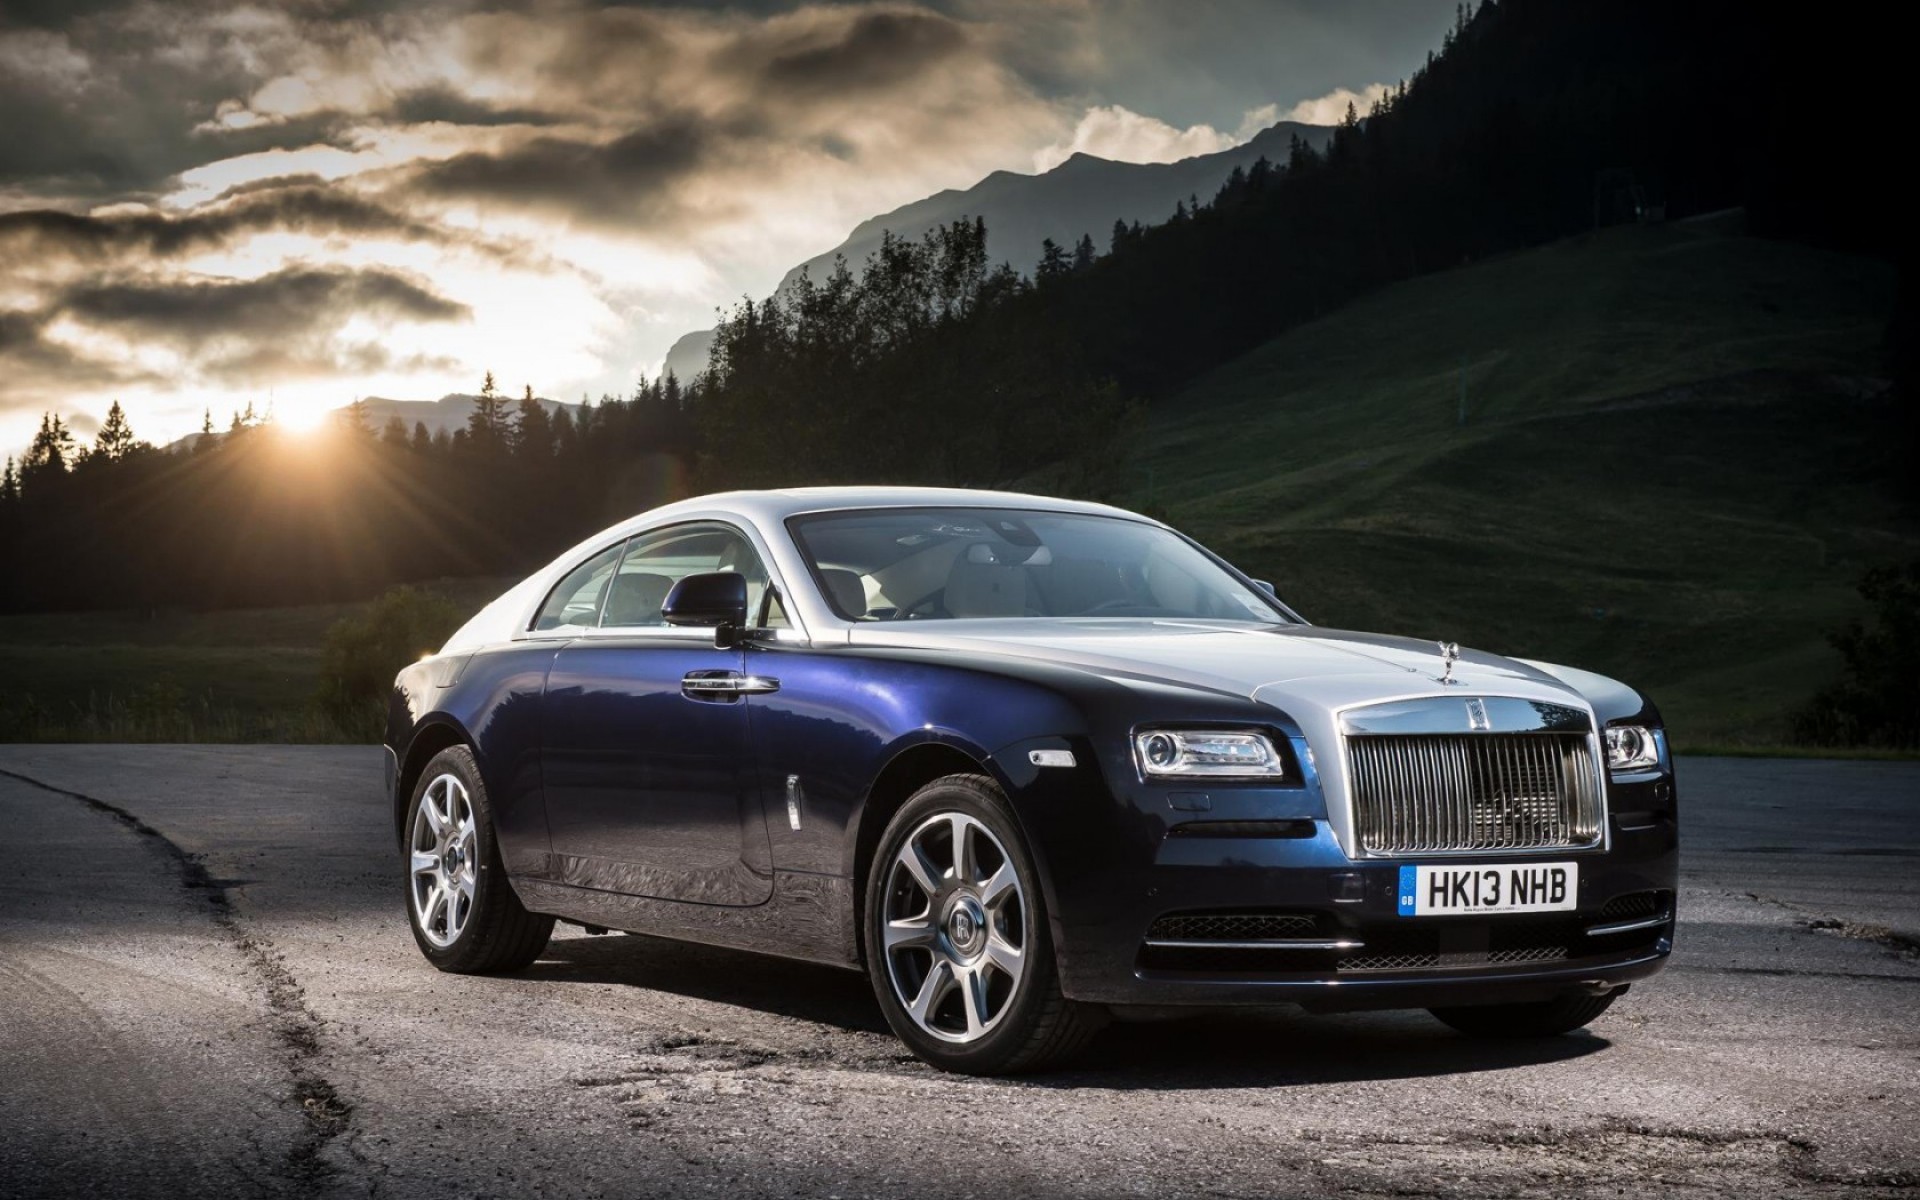 Chào mừng đến với bộ sưu tập hình nền Rolls Royce Wraith Wallpapers HD tuyệt đẹp! Các bức ảnh này sẽ đưa bạn đến với thế giới xa xỉ của dòng xe siêu sang mạnh mẽ này. Hãy thưởng thức những thiết kế đầy uy lực và sang trọng của Rolls Royce Wraith nhé! 